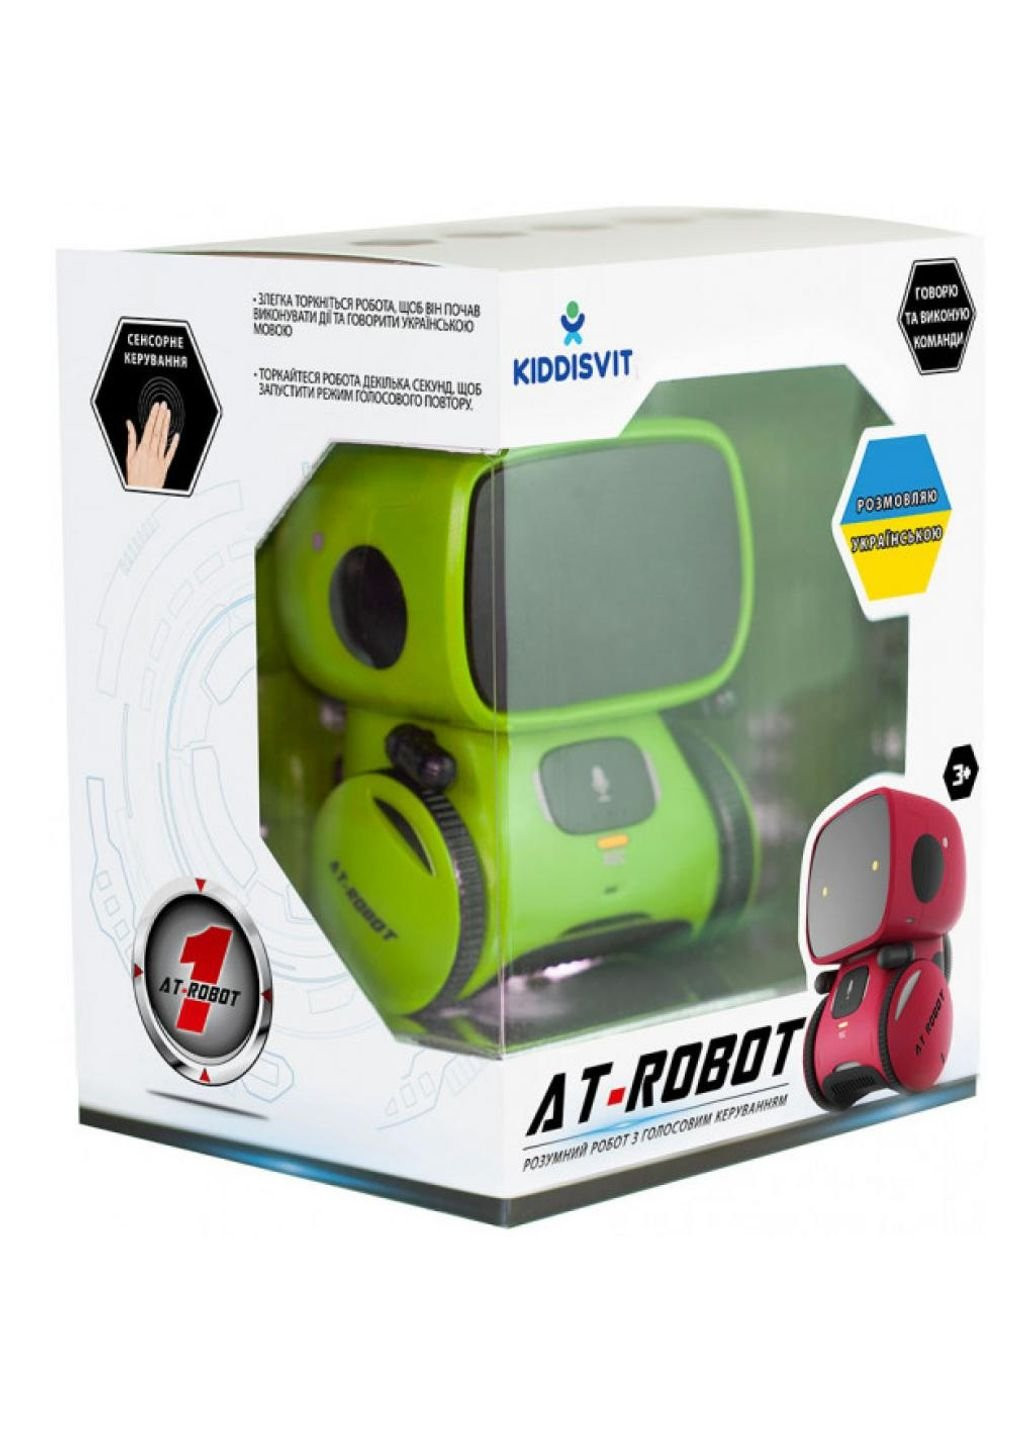 Интерактивная игрушка робот с голосовым управлением зеленый, укр (AT001-02-UKR) AT-Robot (252147982)